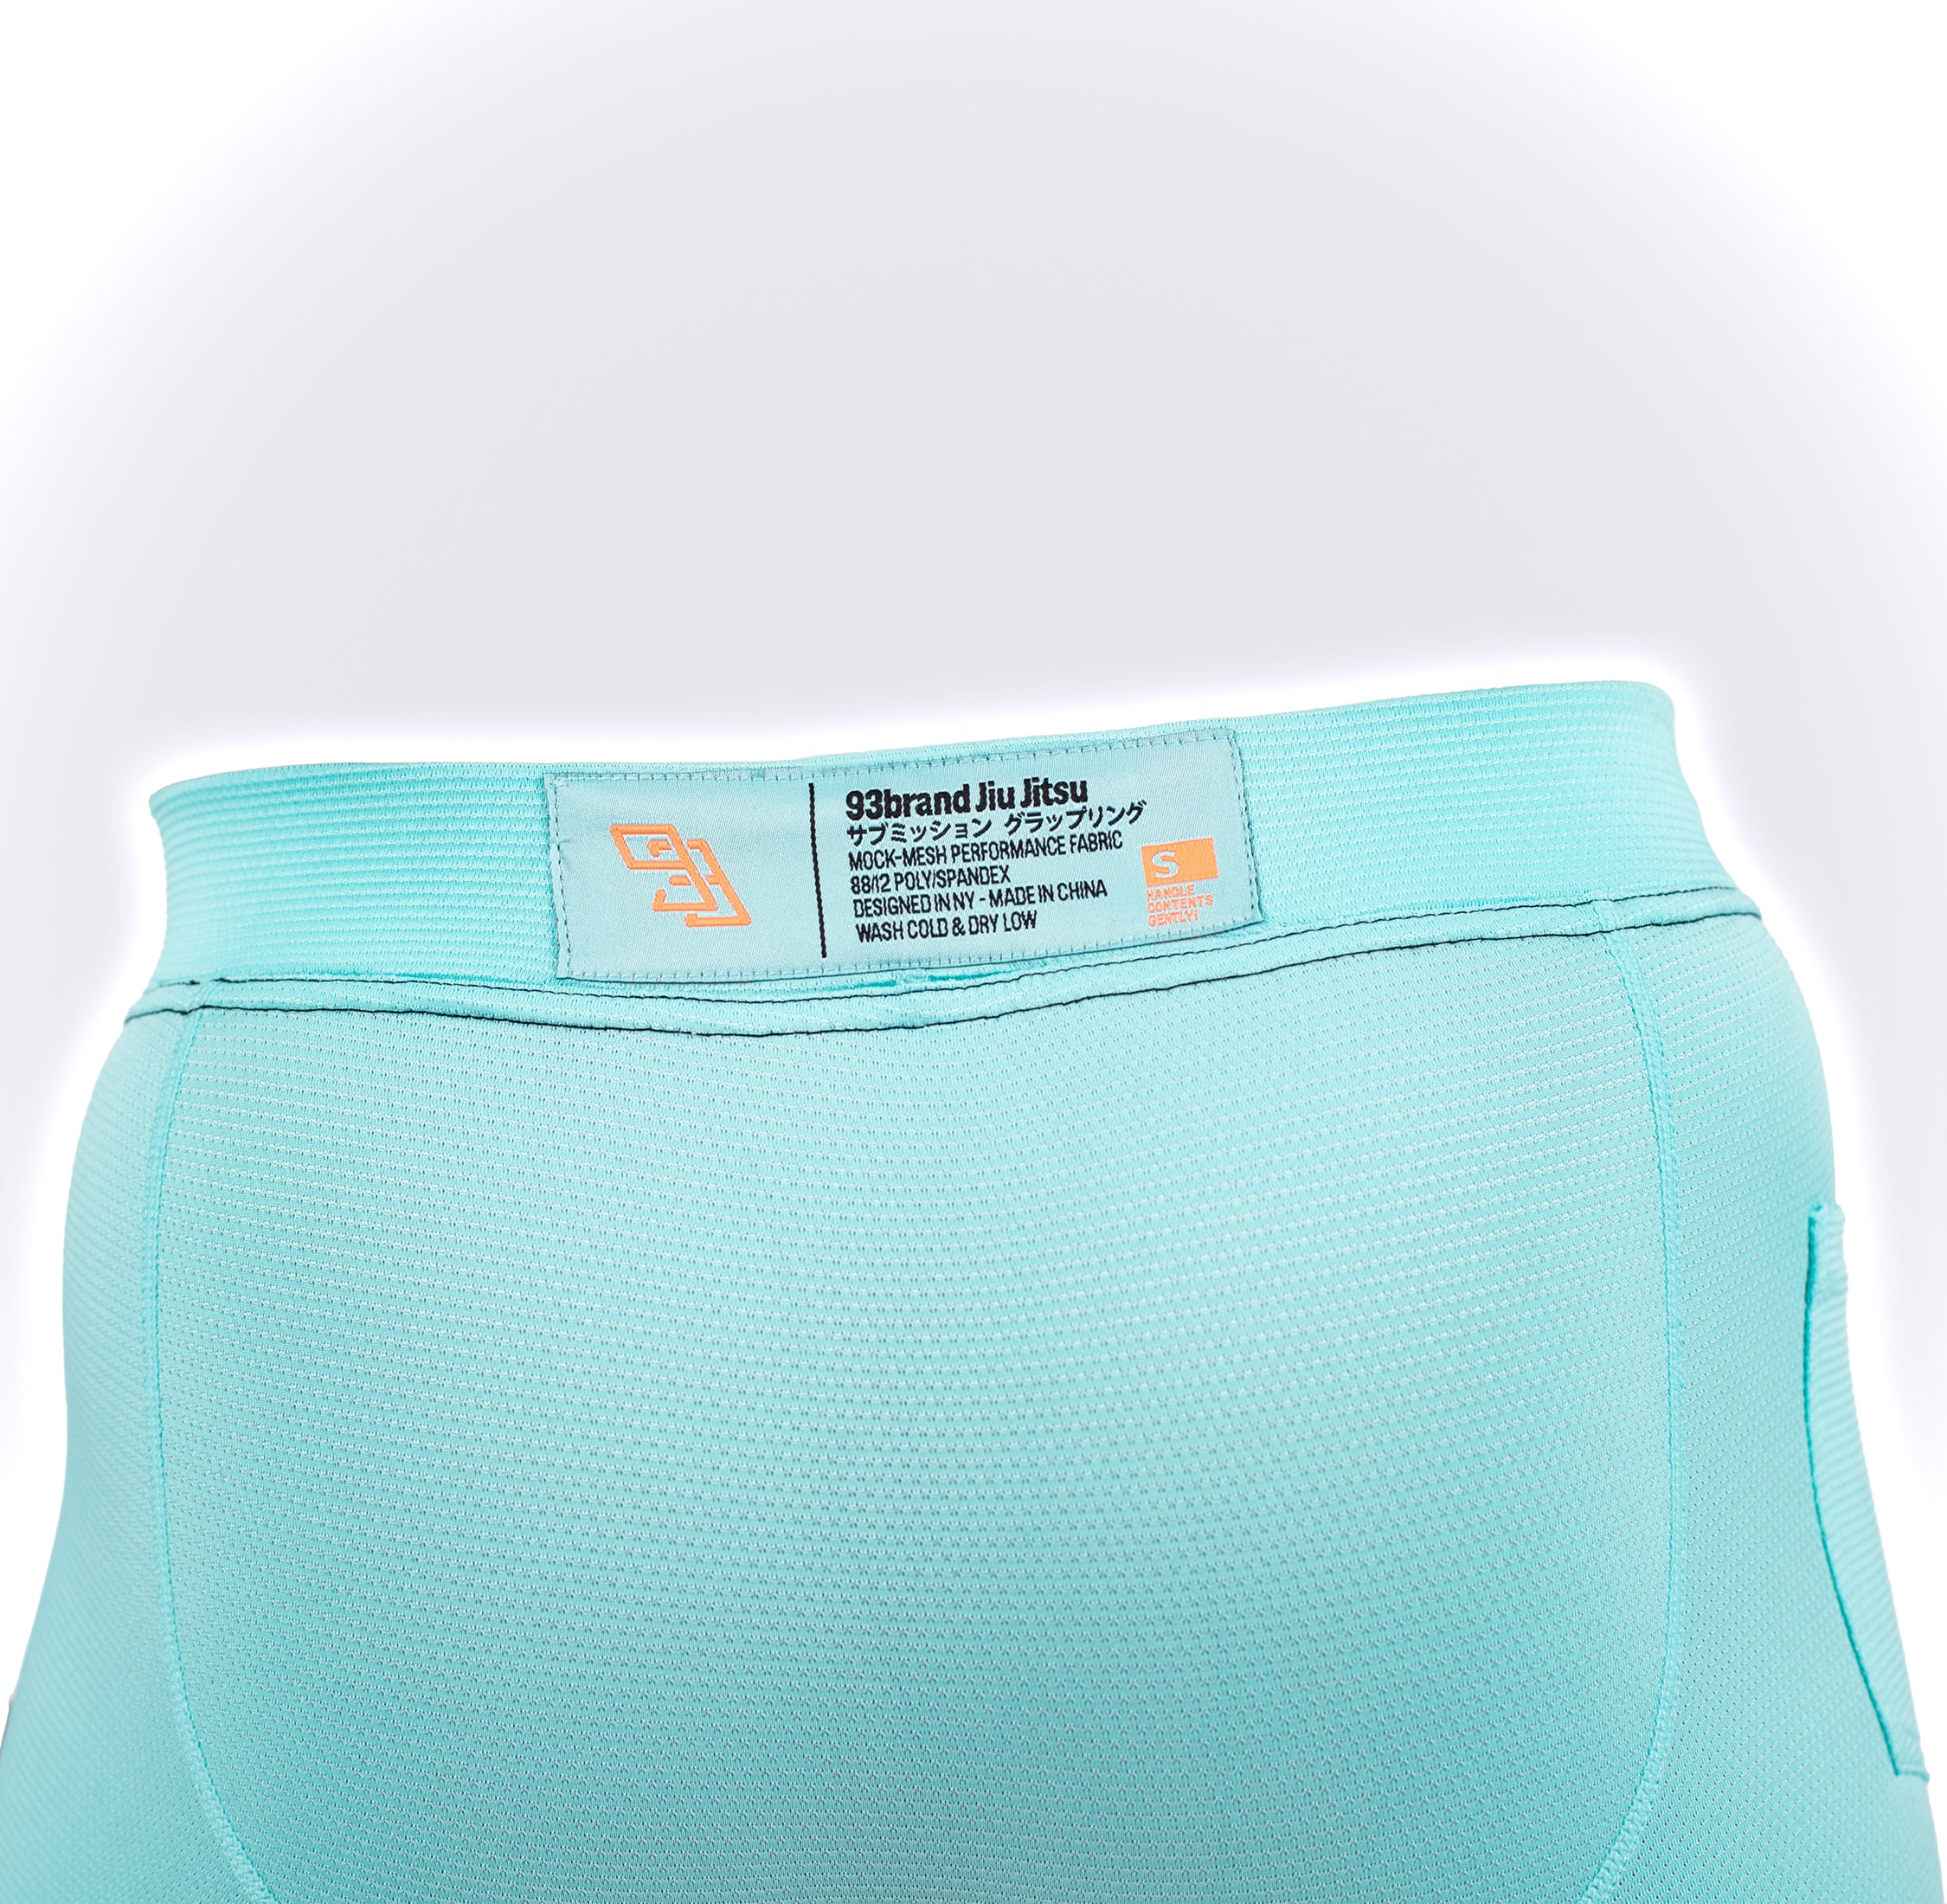 Grappling Underwear 2-PACK (Version 2.0) – 93brand